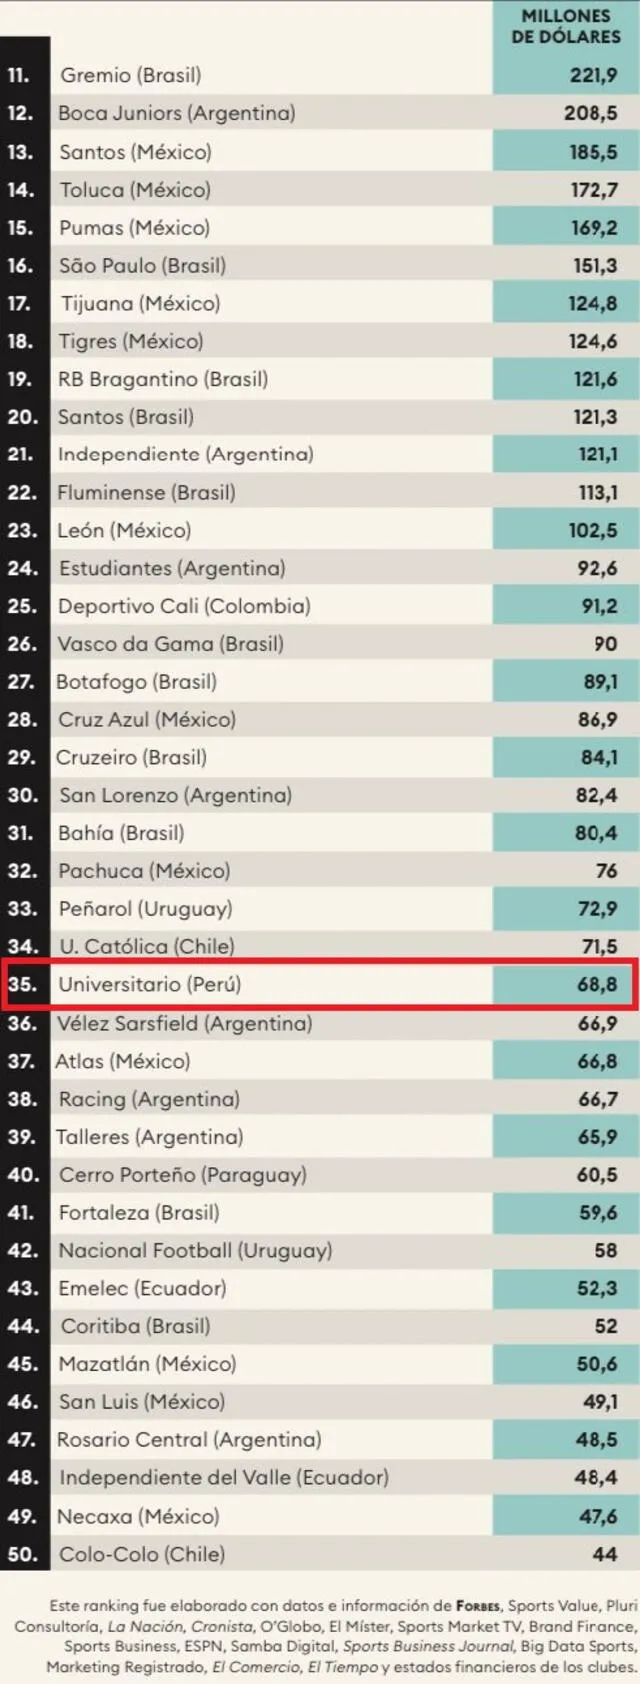  Universitario dentro del top 50 de los clubes más valiosos de Latinoamérica. Foto: captura Forbes   